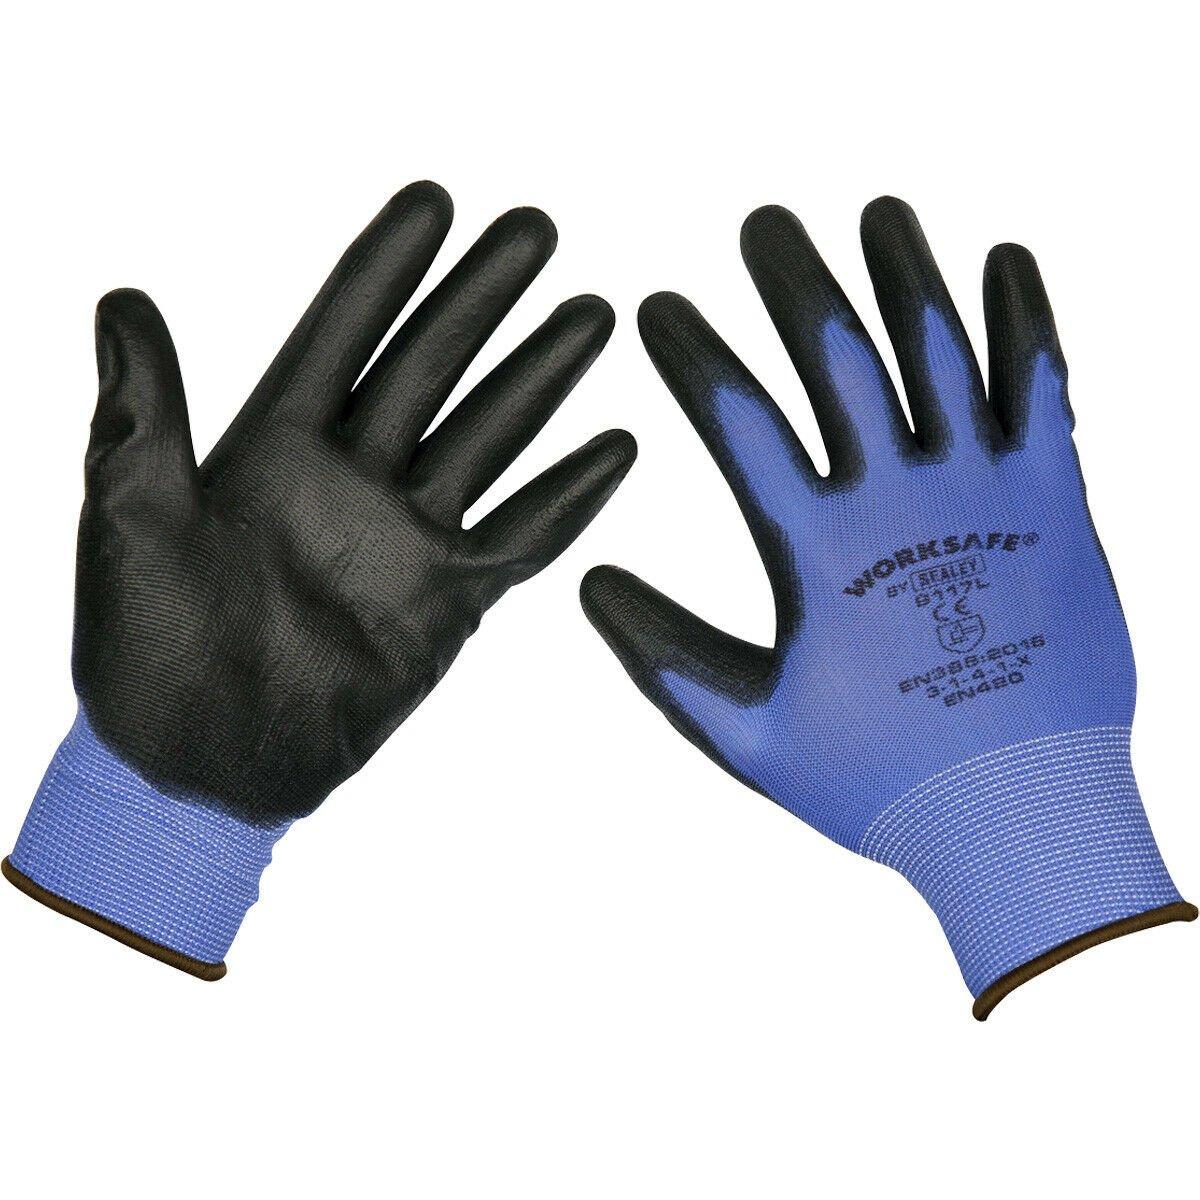 6 пар легких рабочих перчаток с точным захватом, больших размеров, на эластичном запястье Loops, мультиколор перчатки рабочие спилок усиленная ладонь xl